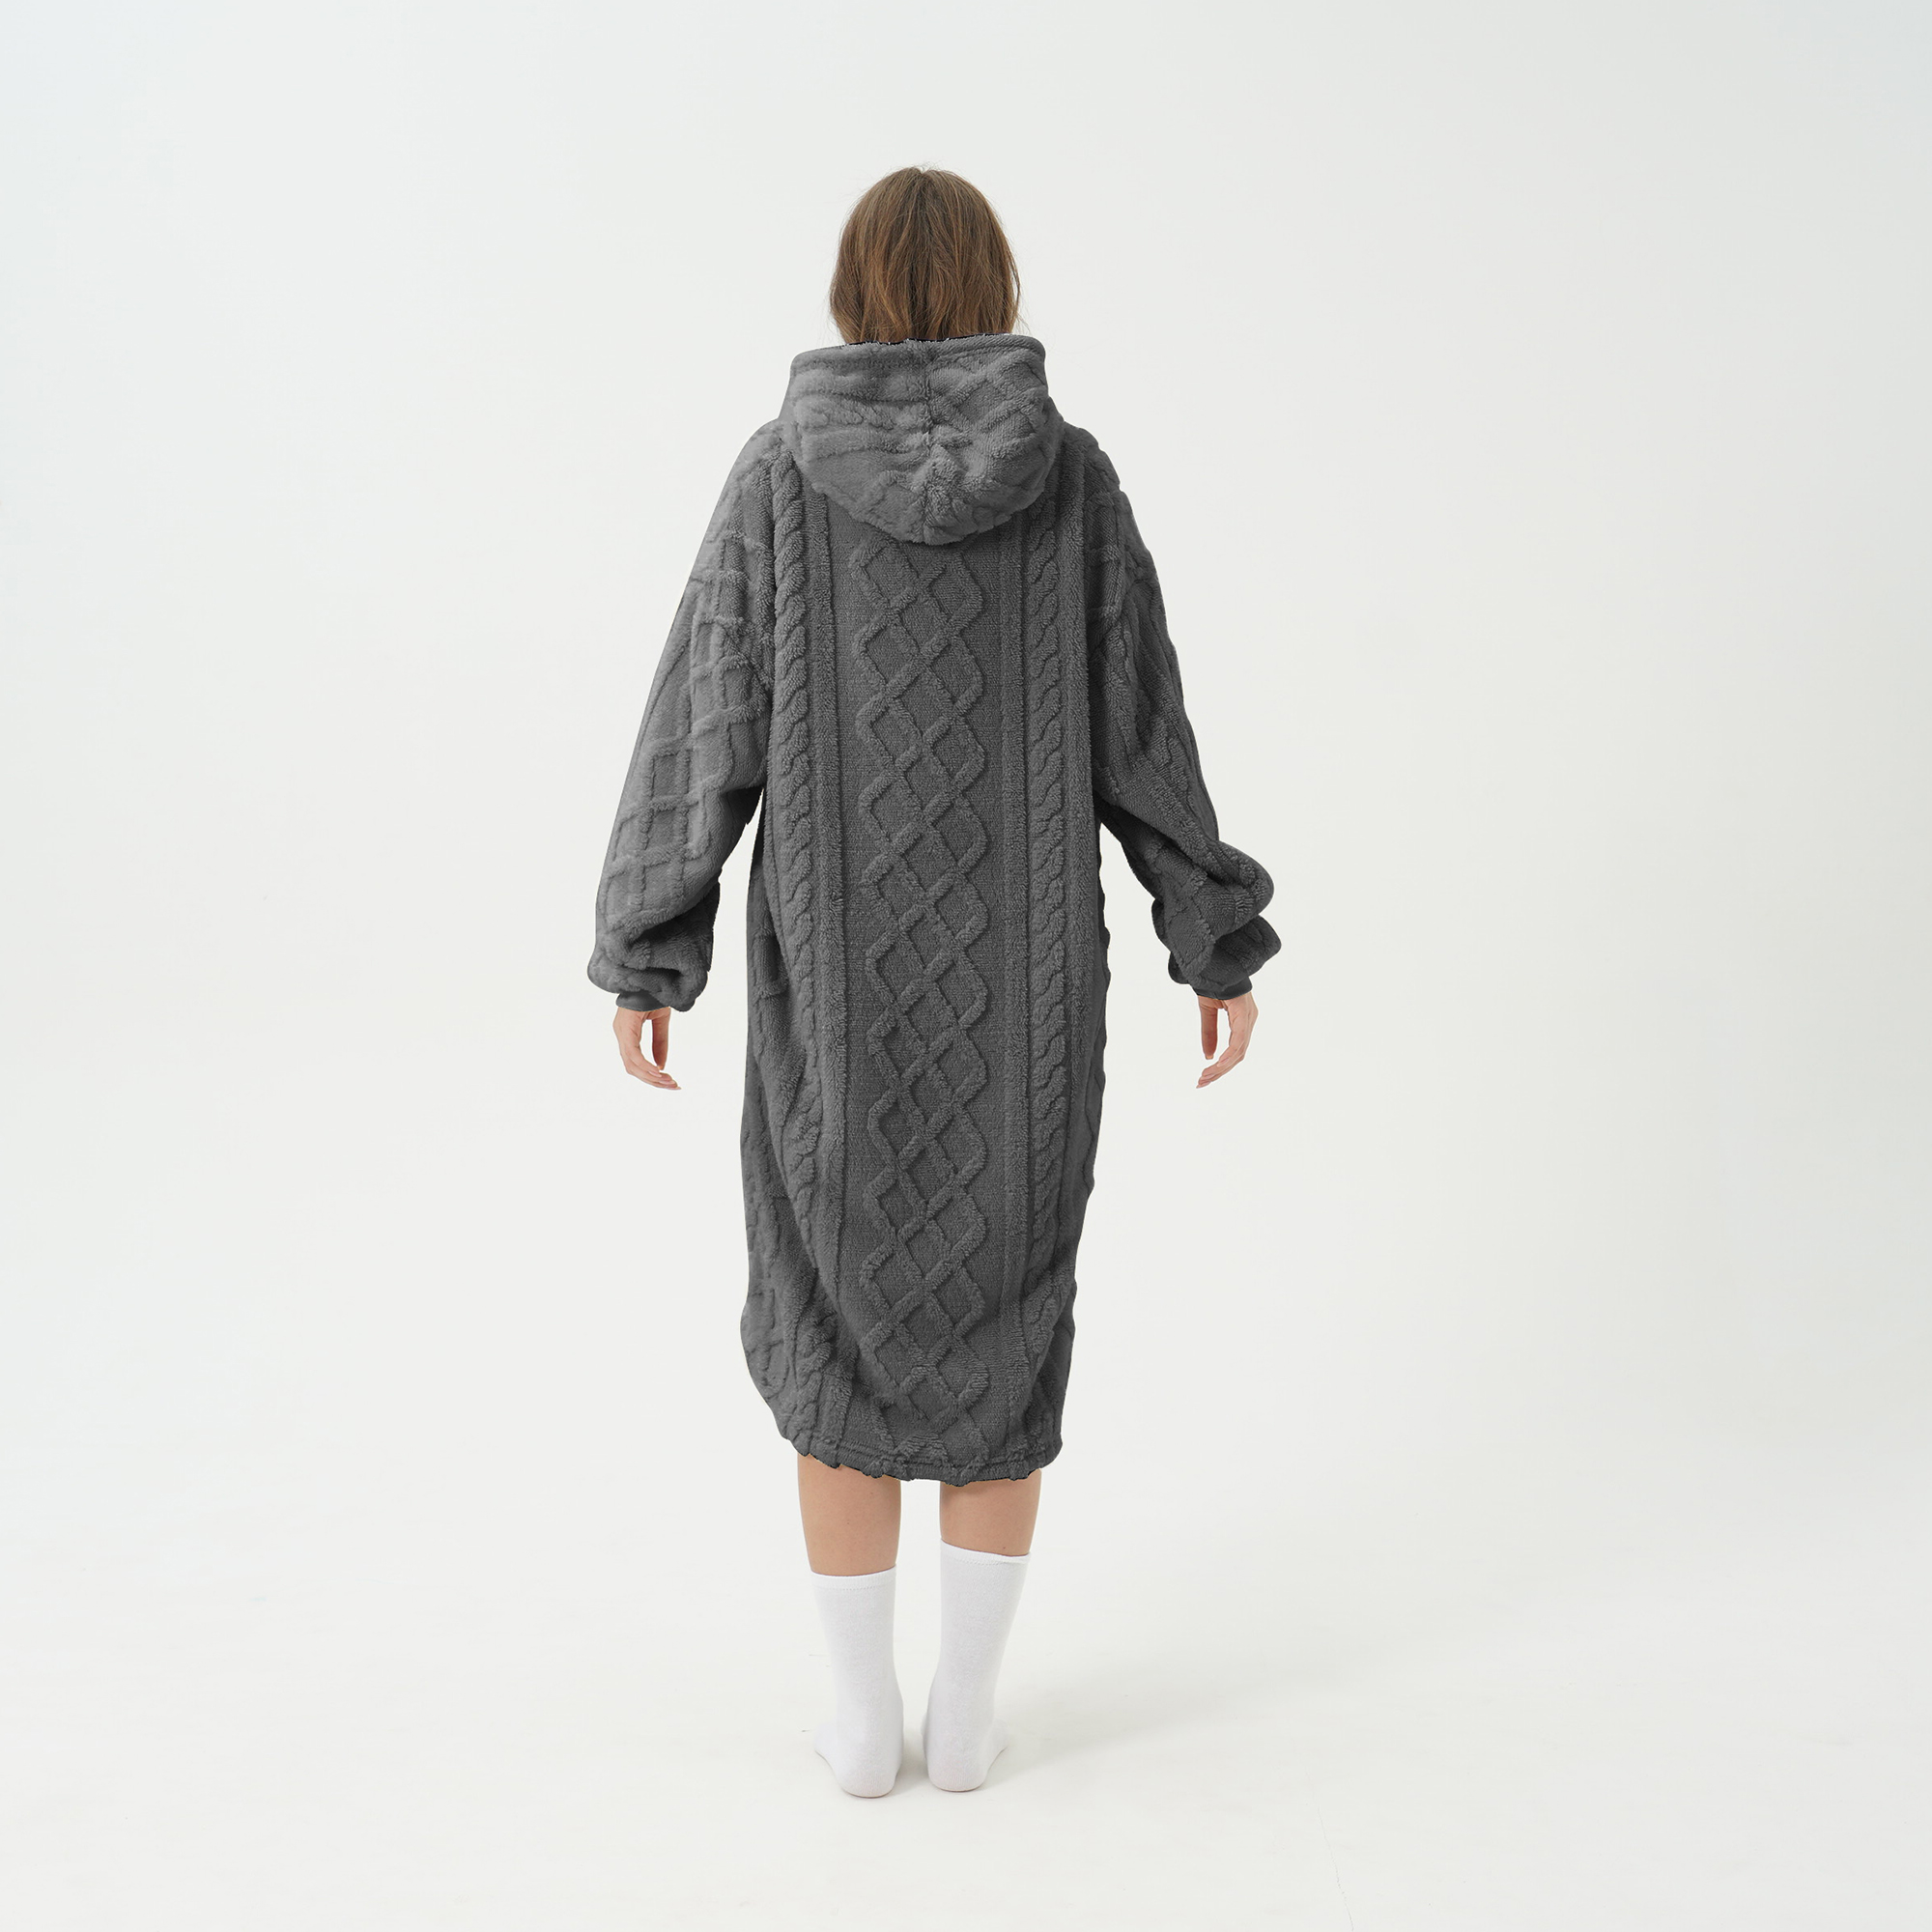 SOPHIE Oversized Hoodie - 70x110 cm - Hoodie & deken in één - extra grote kabeltrui met capuchon - Charcoal Gray - antraciet